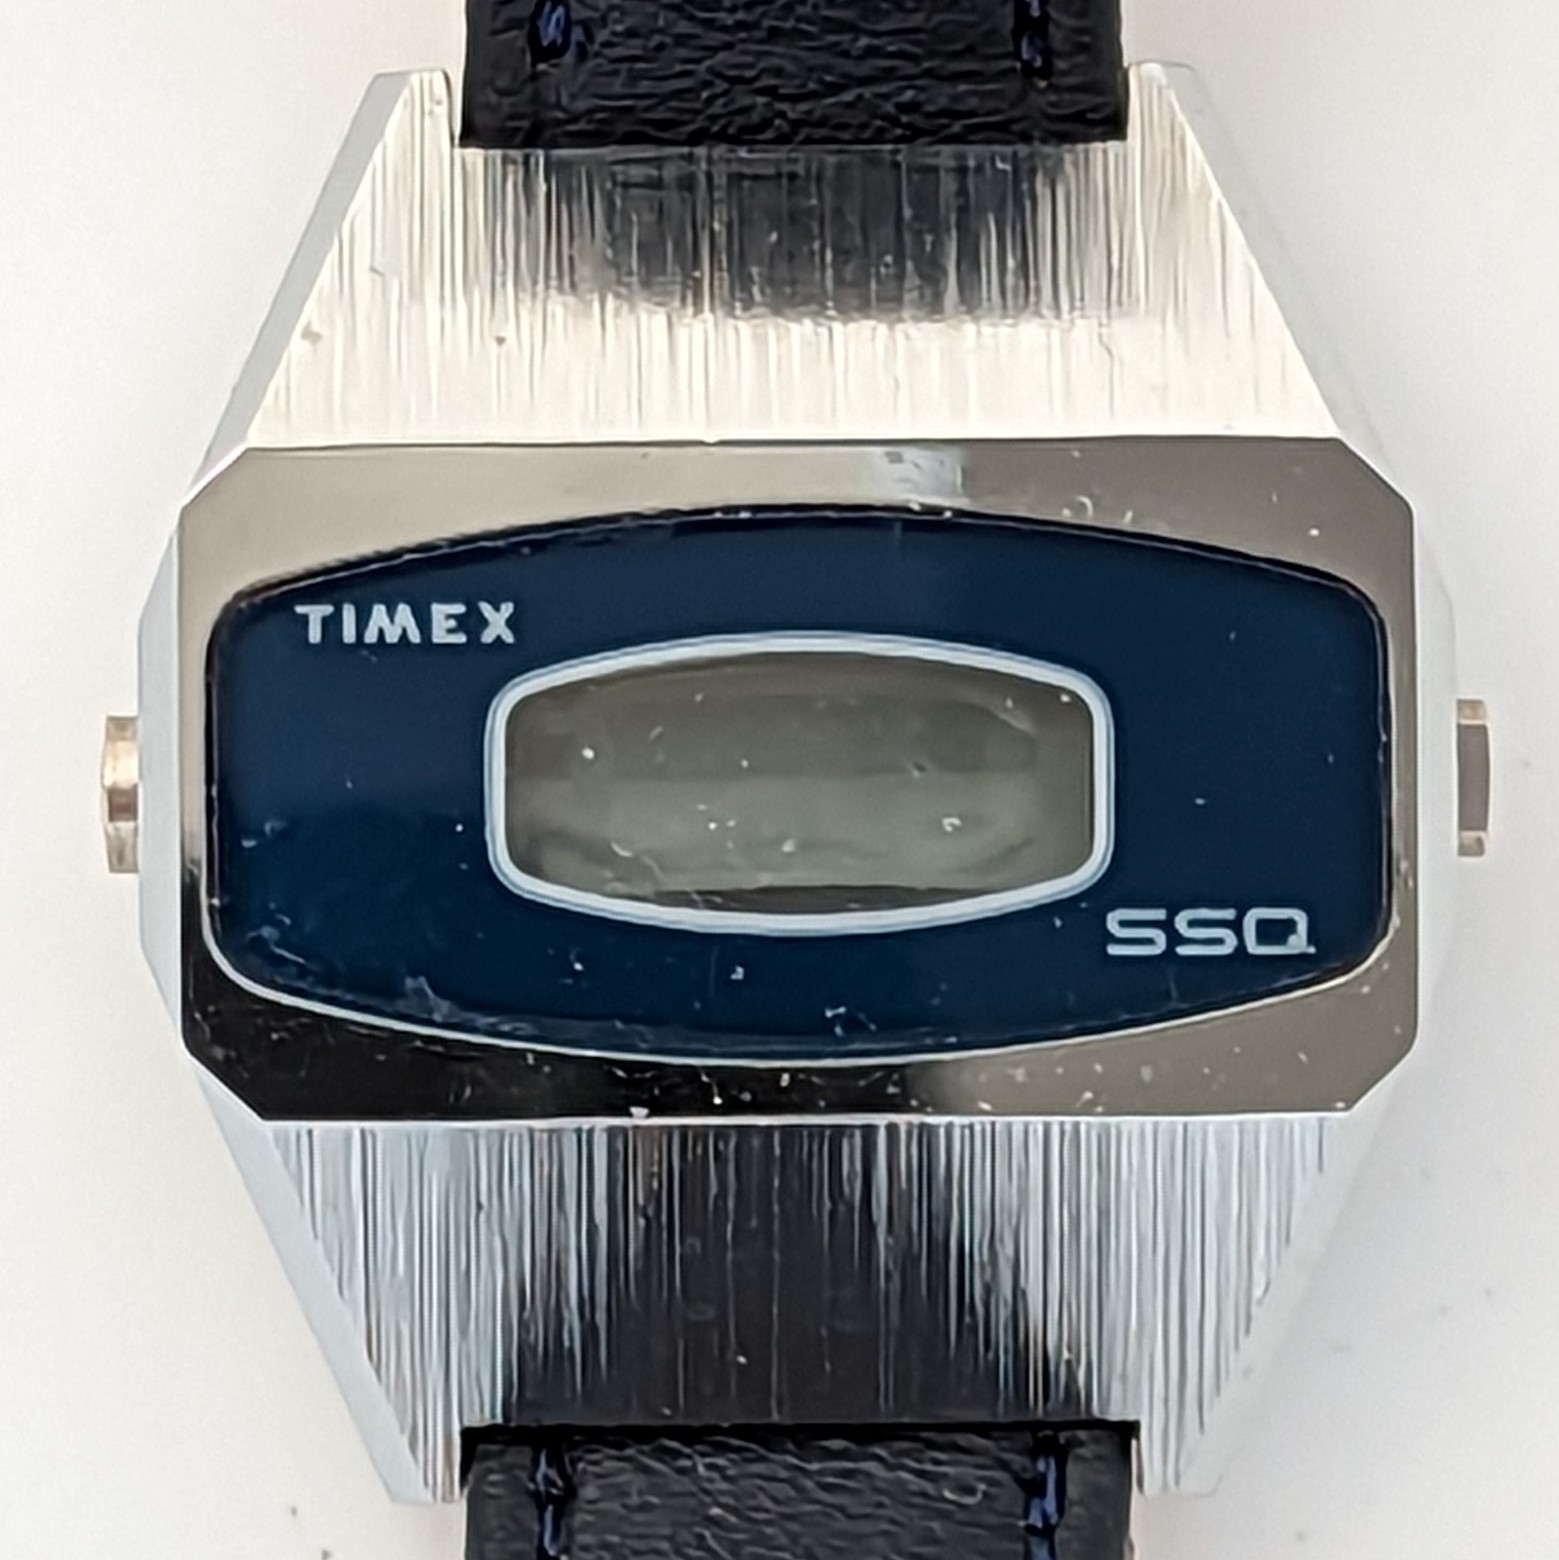 Timex SSQ 99670 xx77 [1977]